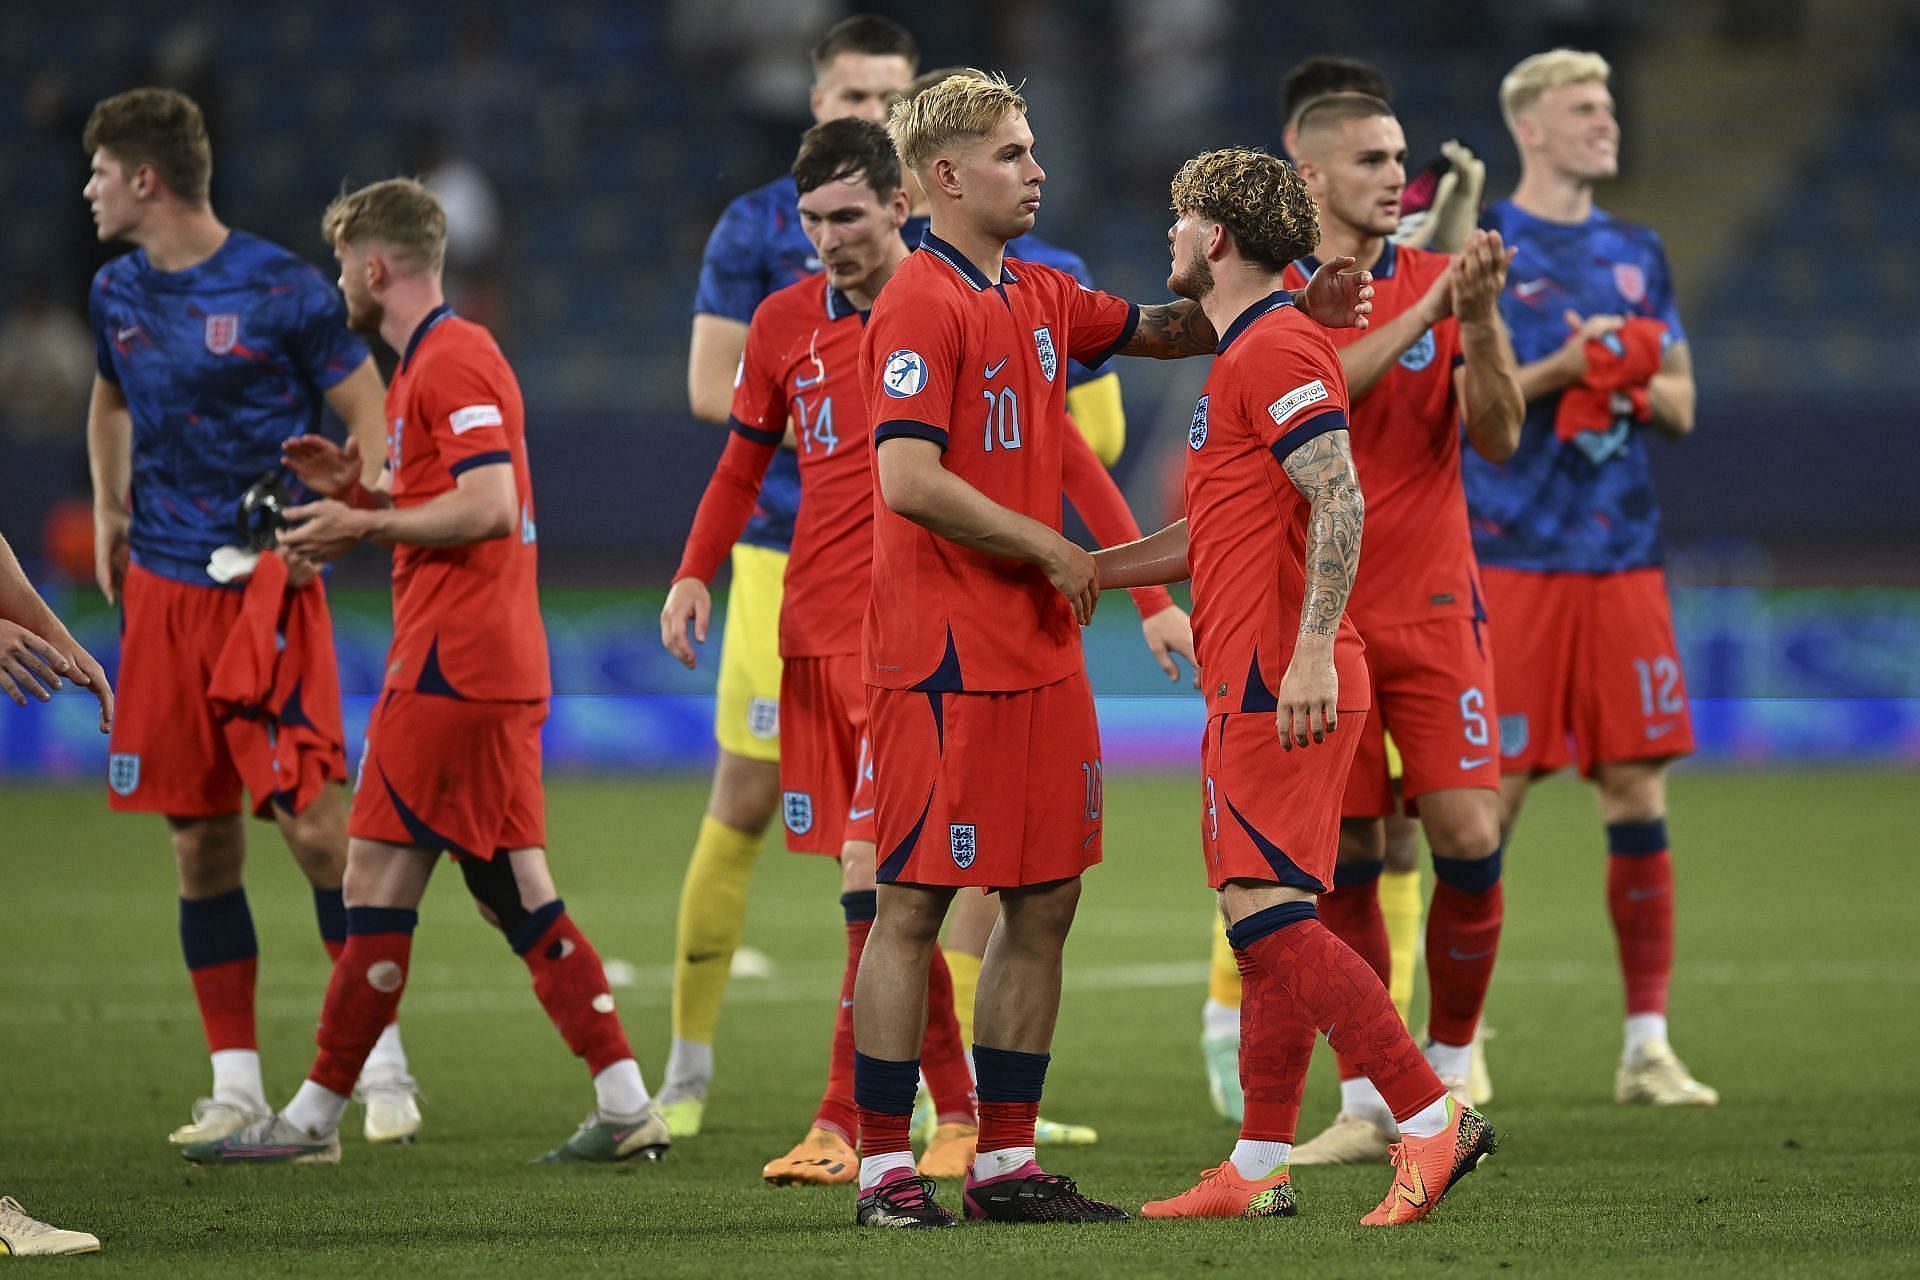 England U21 will face Serbia U21 on Saturday 